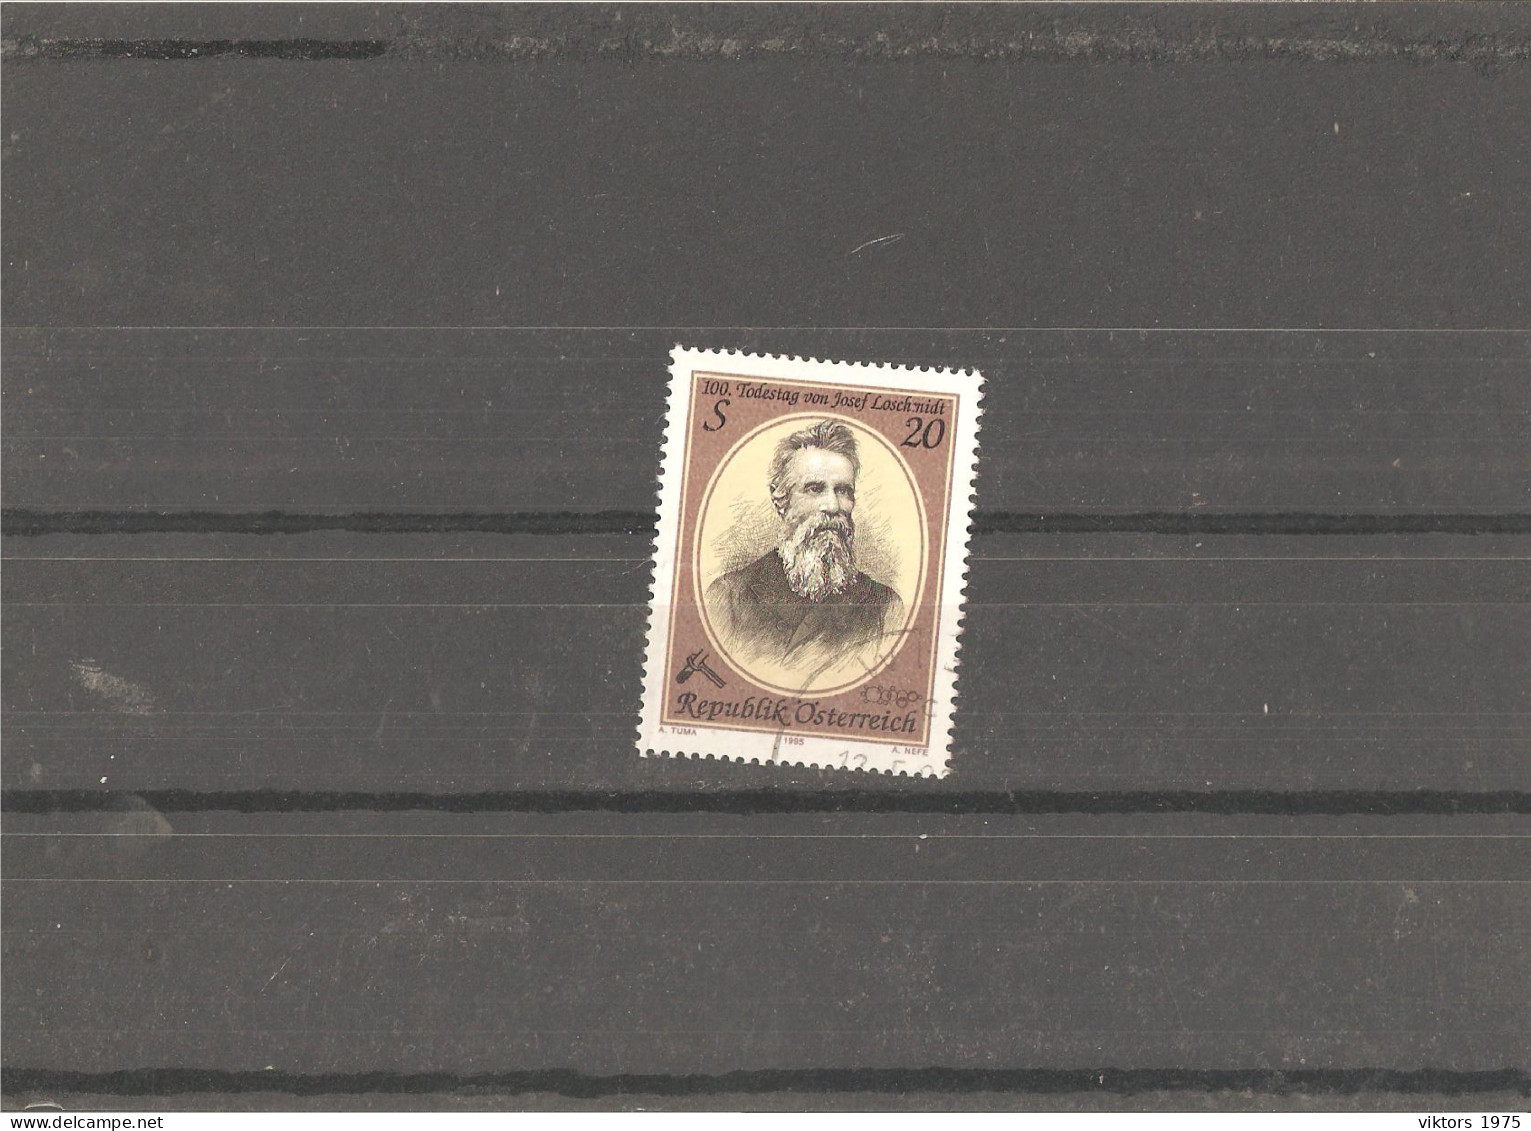 Used Stamp Nr.2163 In MICHEL Catalog - Usati